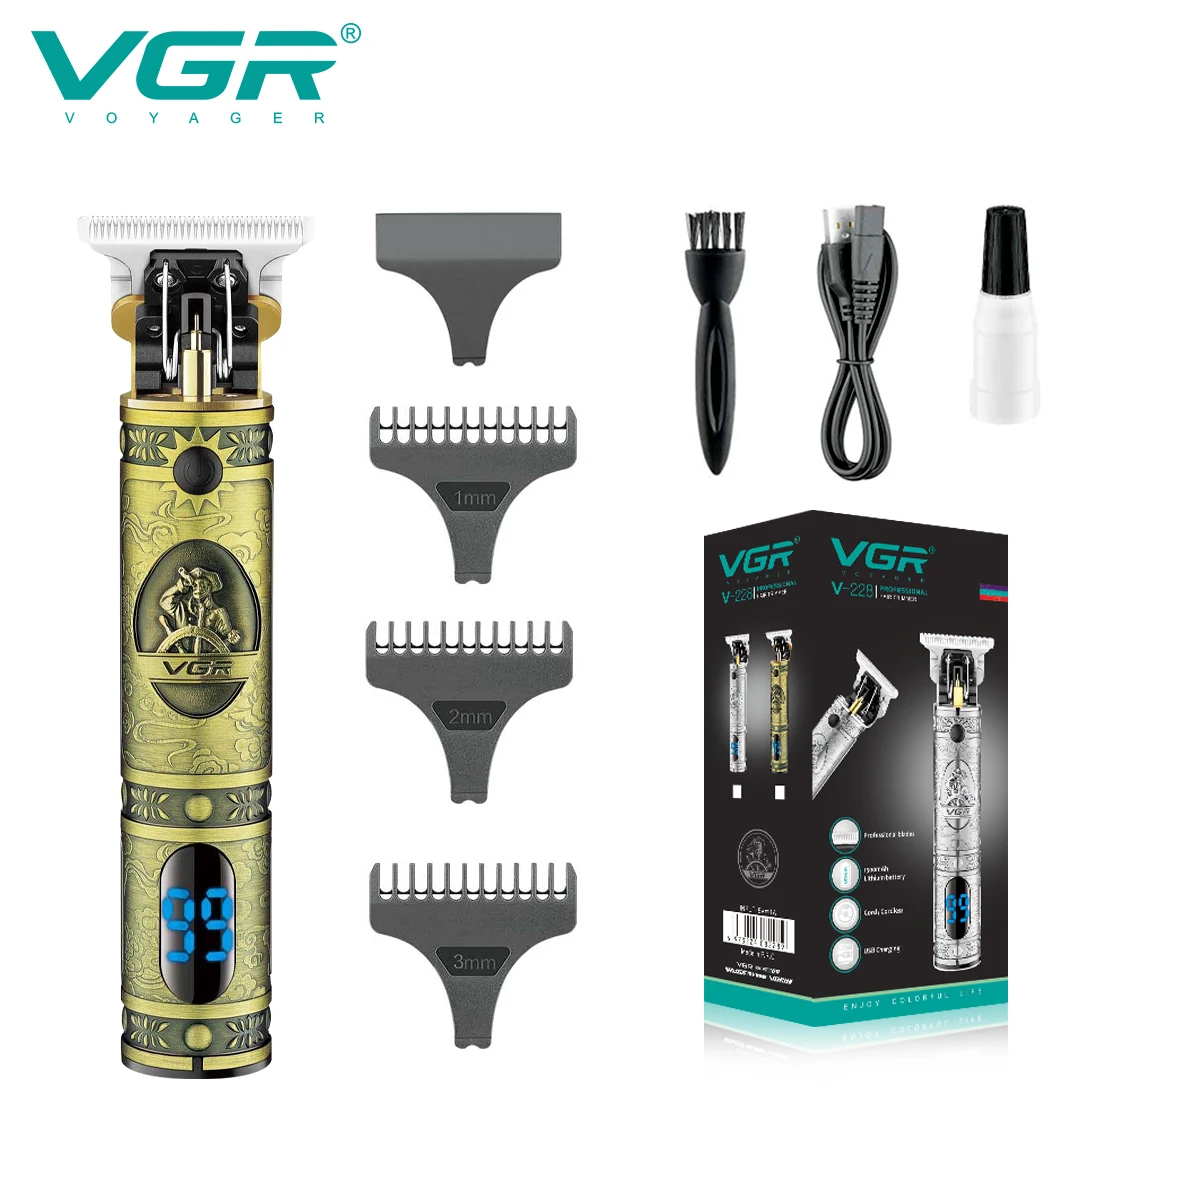 

VGR машинка для стрижки Триммер для волос Профессиональный машинка для стрижки волос беспроводной Триммер для бороды Перезаряжаемый Т-образный клинок Металл Портативный Триммер для волос для мужчин V-228